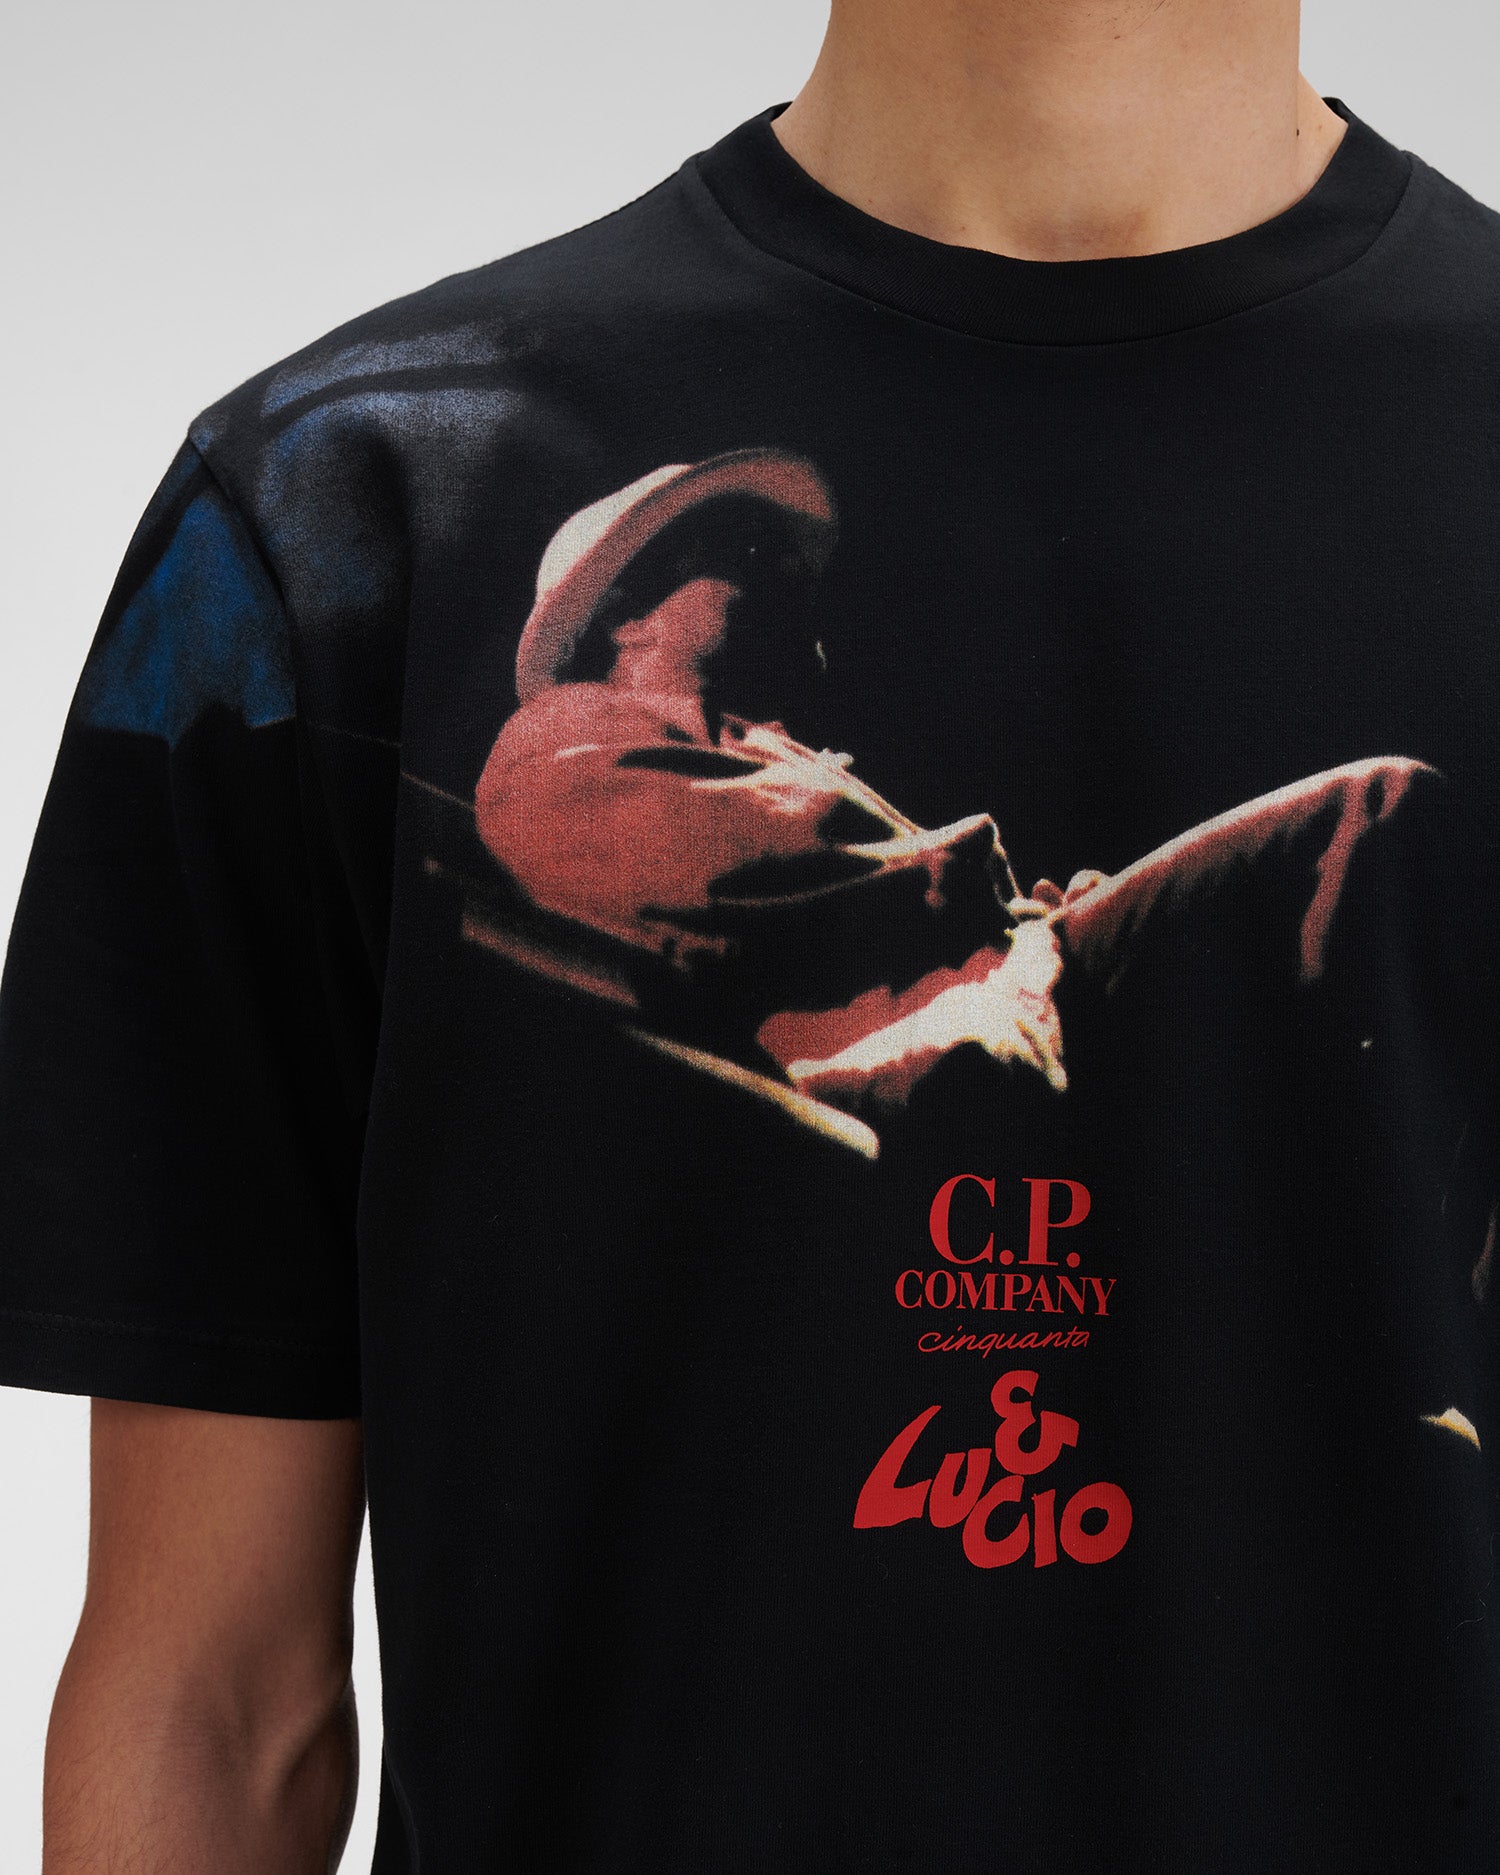 C.P Company & Lucio Dalla T-Shirt